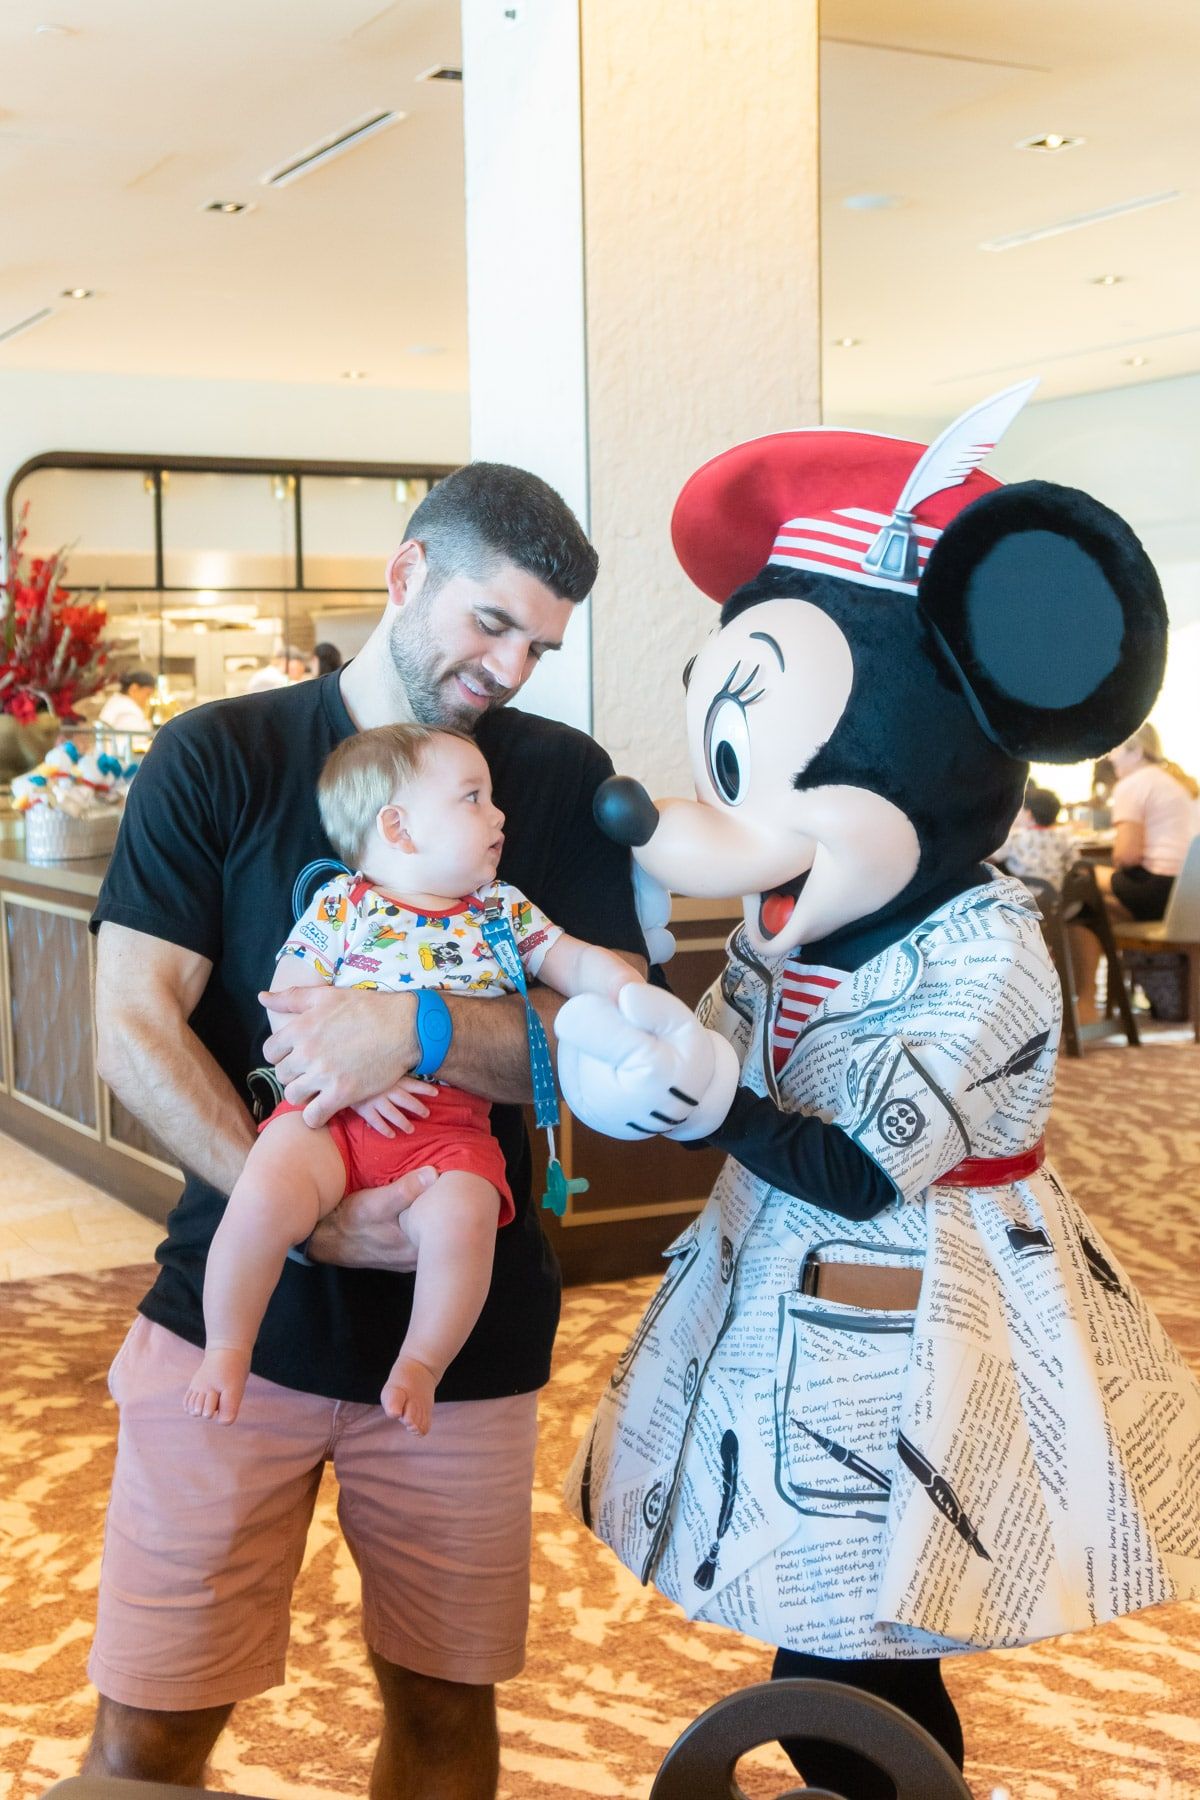 Mies ja vauva Minnie Mouse -hiiren kanssa